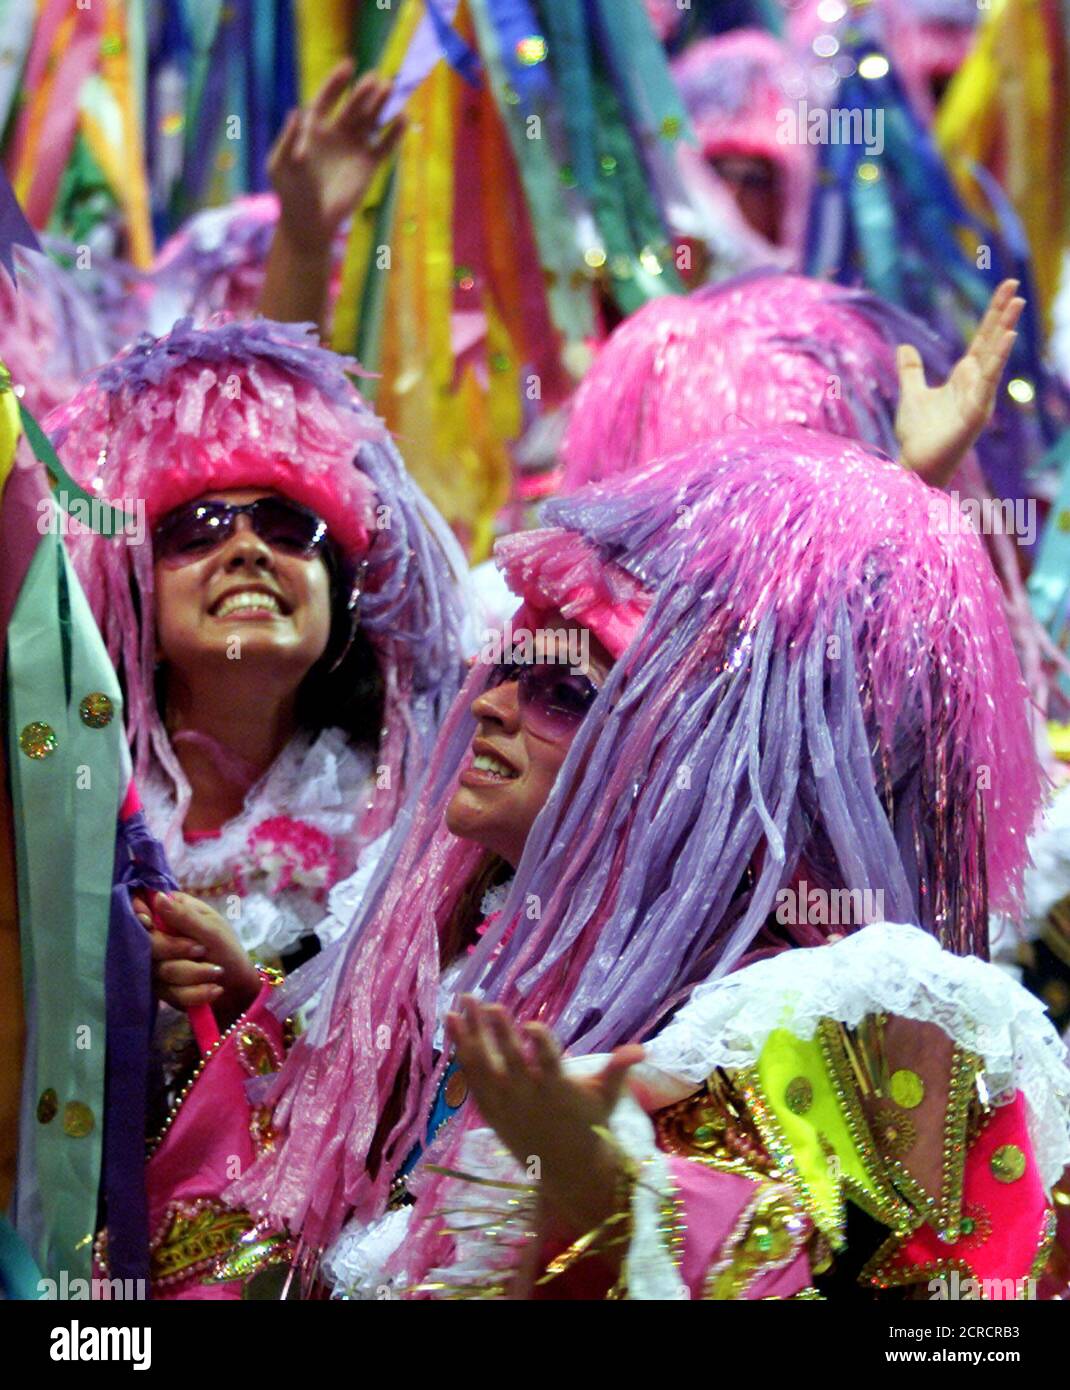 Miembros de la escuela de samba Mangueira celebran en el estadio de Sambódromo de Río de Janeiro, 11 de febrero de 2002. Las fiestas de Carnaval en todo Brasil se llevarán a cabo hasta el 12 de febrero. REUTERS/Sergio Moraes SM Foto de stock